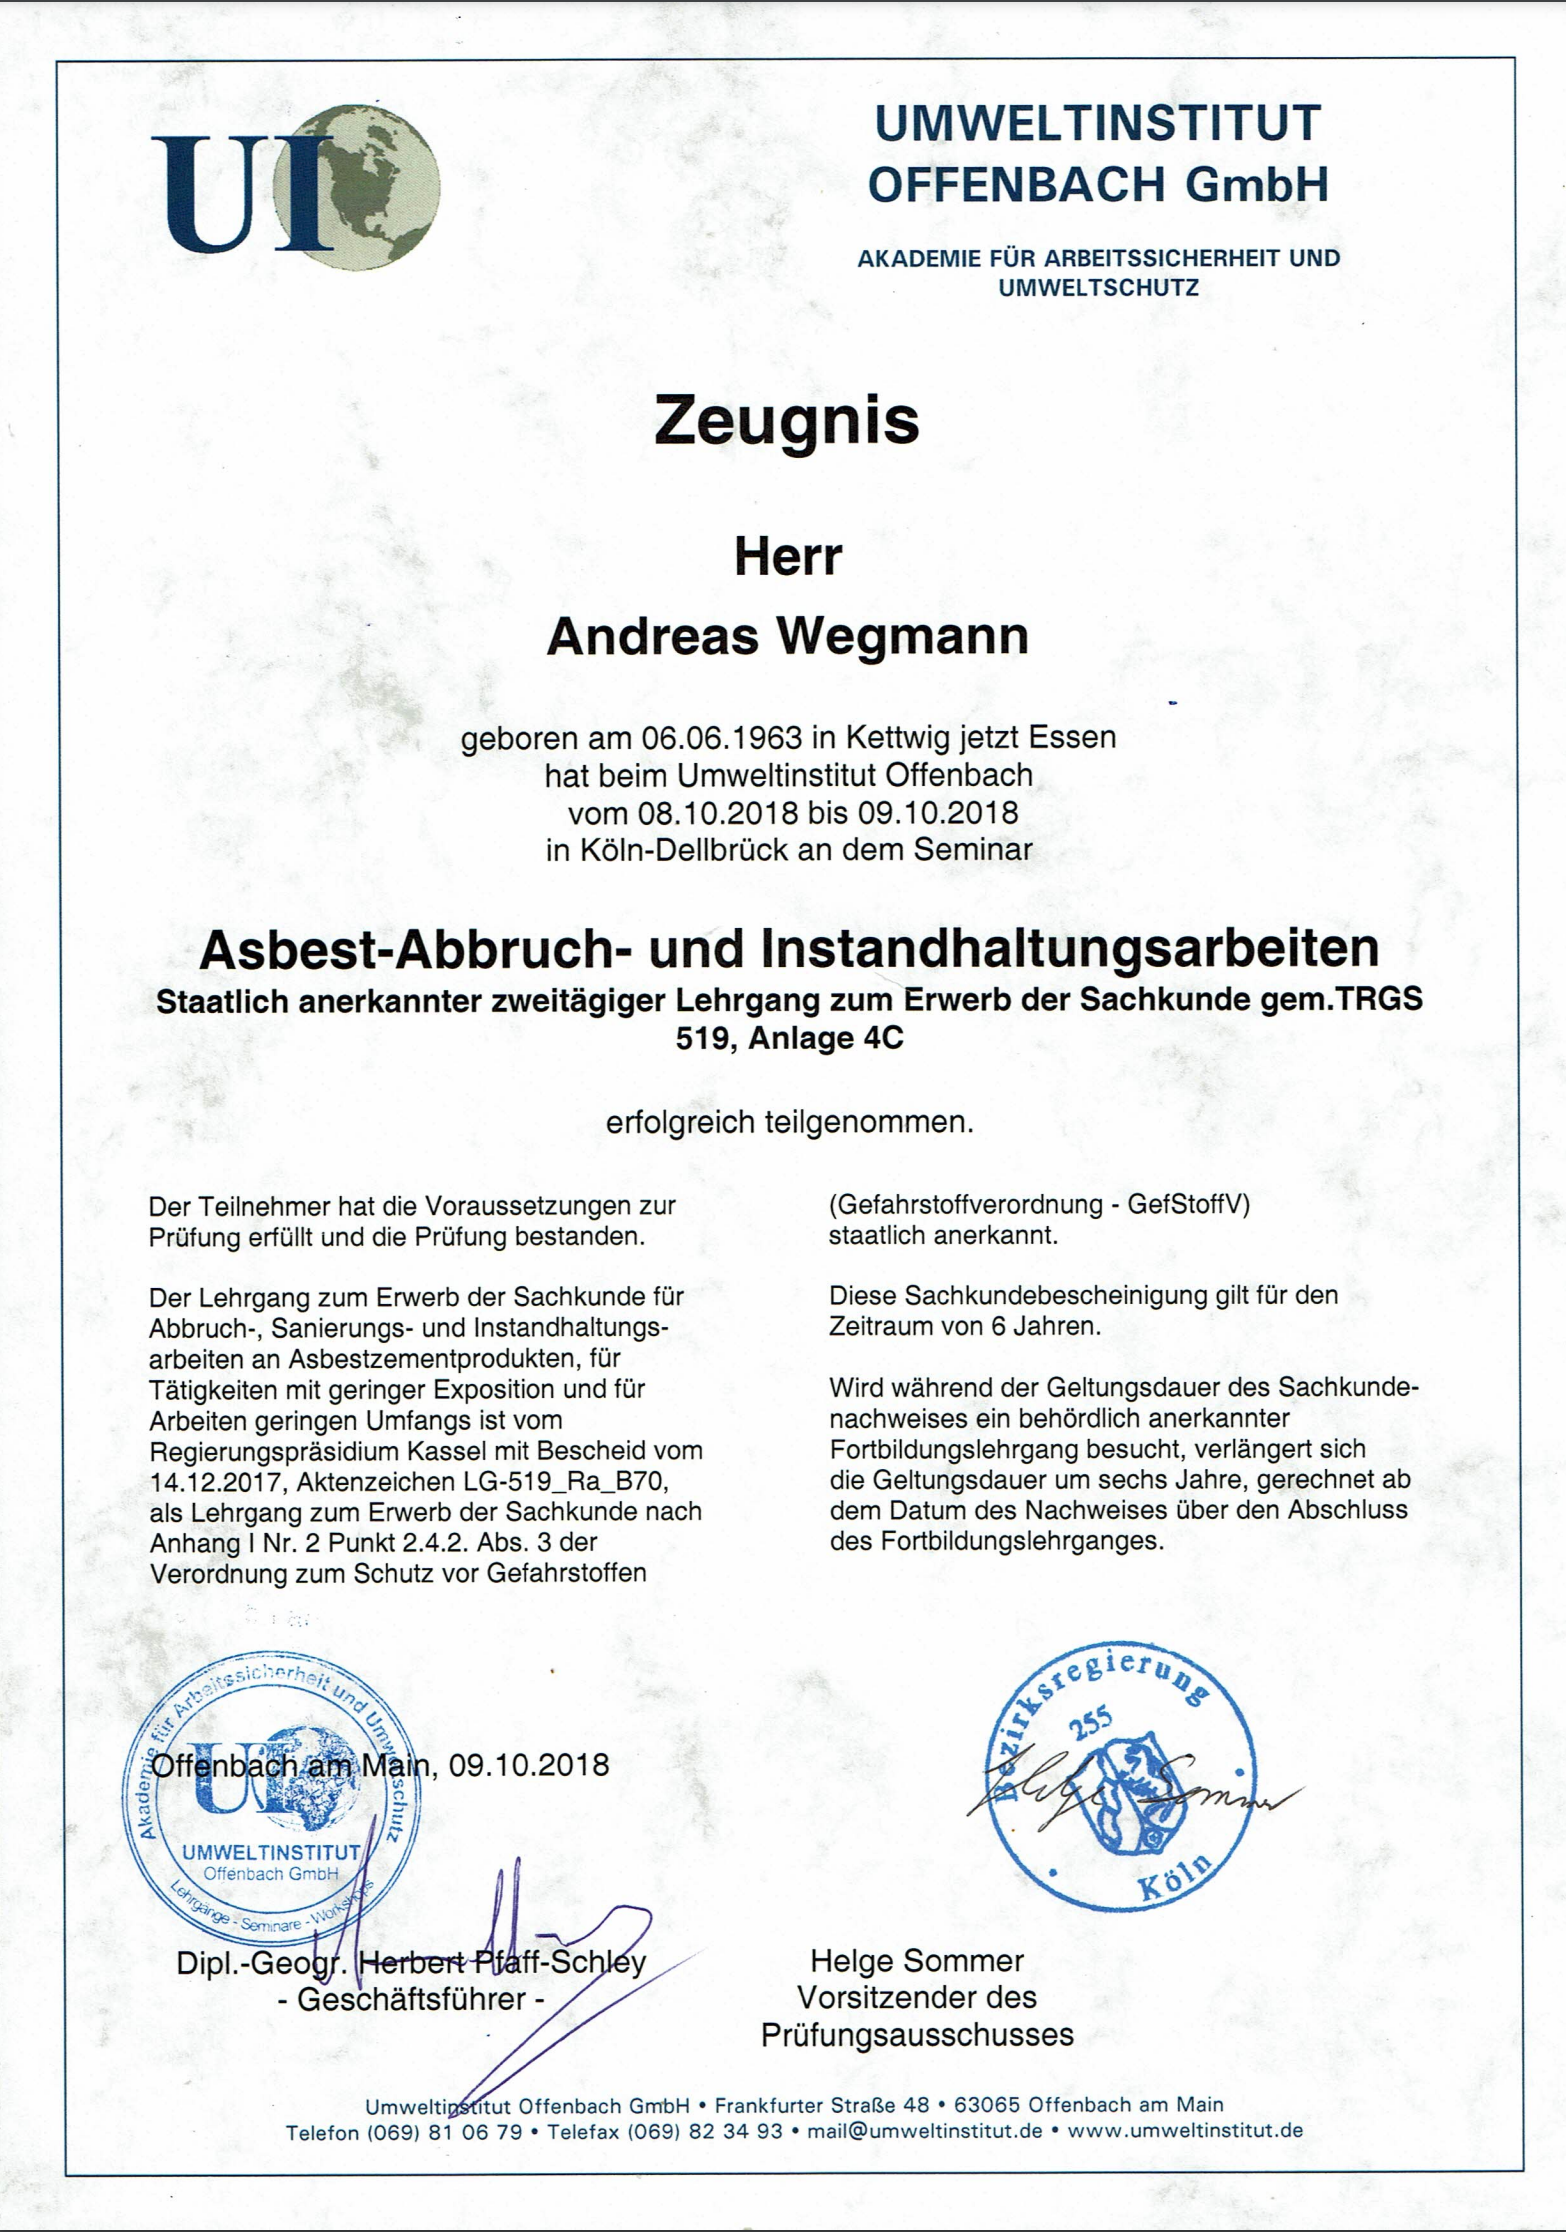 Zeugnis Asbest-Abbruch- und Instandhaltungsarbeiten - Schmiede und Schlosserei Wegmann aus Heiligenhaus